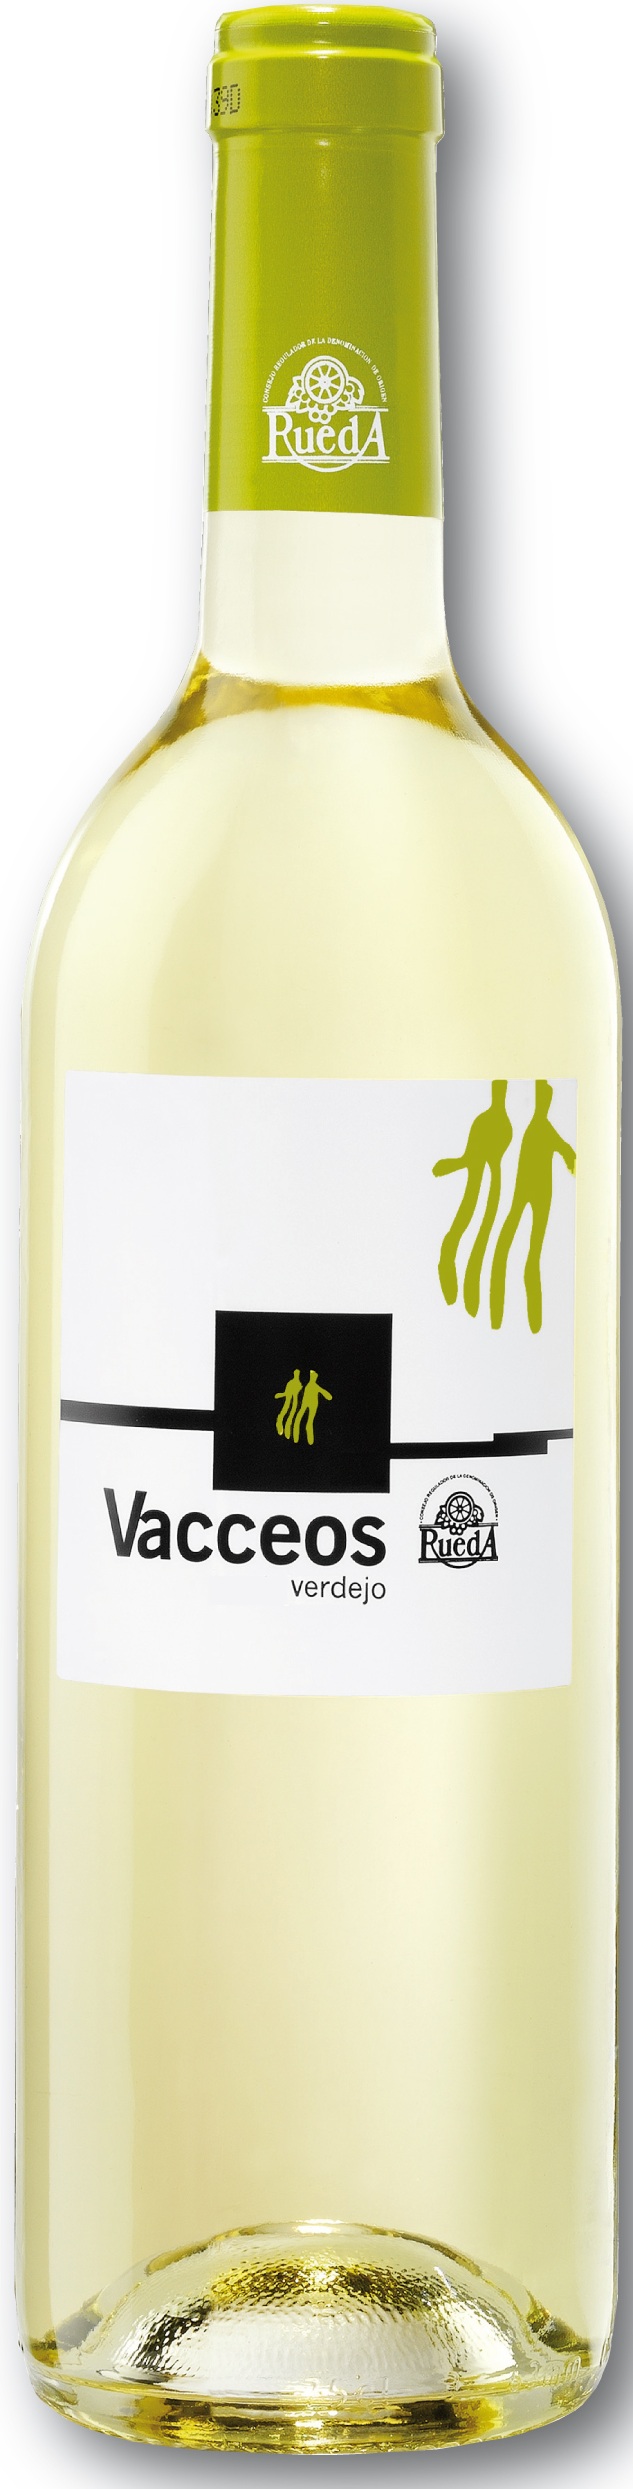 Imagen de la botella de Vino Vacceos Verdejo